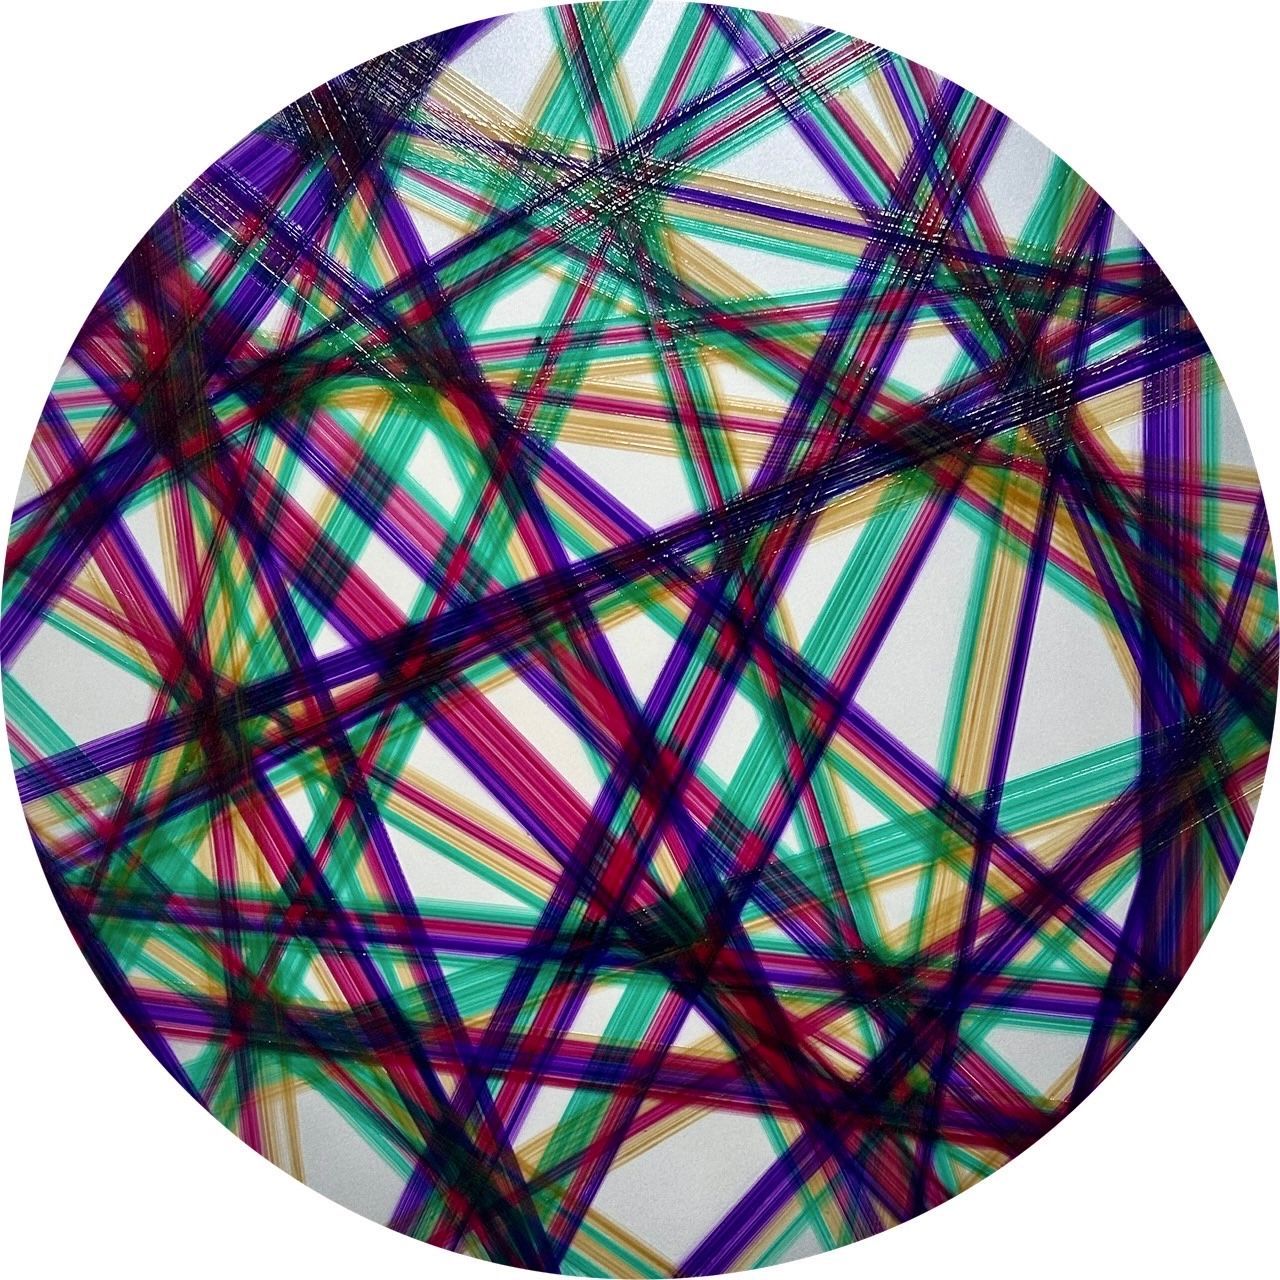 Peinture abstraite de l'artiste japonais Koga Miura. De forme circulaire, cette œuvre très graphique présente des lignes de diverses couleurs, telles que le vert et le violet, qui s'entrecroisent sur un fond blanc agrémenté de nuances argentées. Cette pièce est exposée dans l'exposition « Follow the Lines ! »